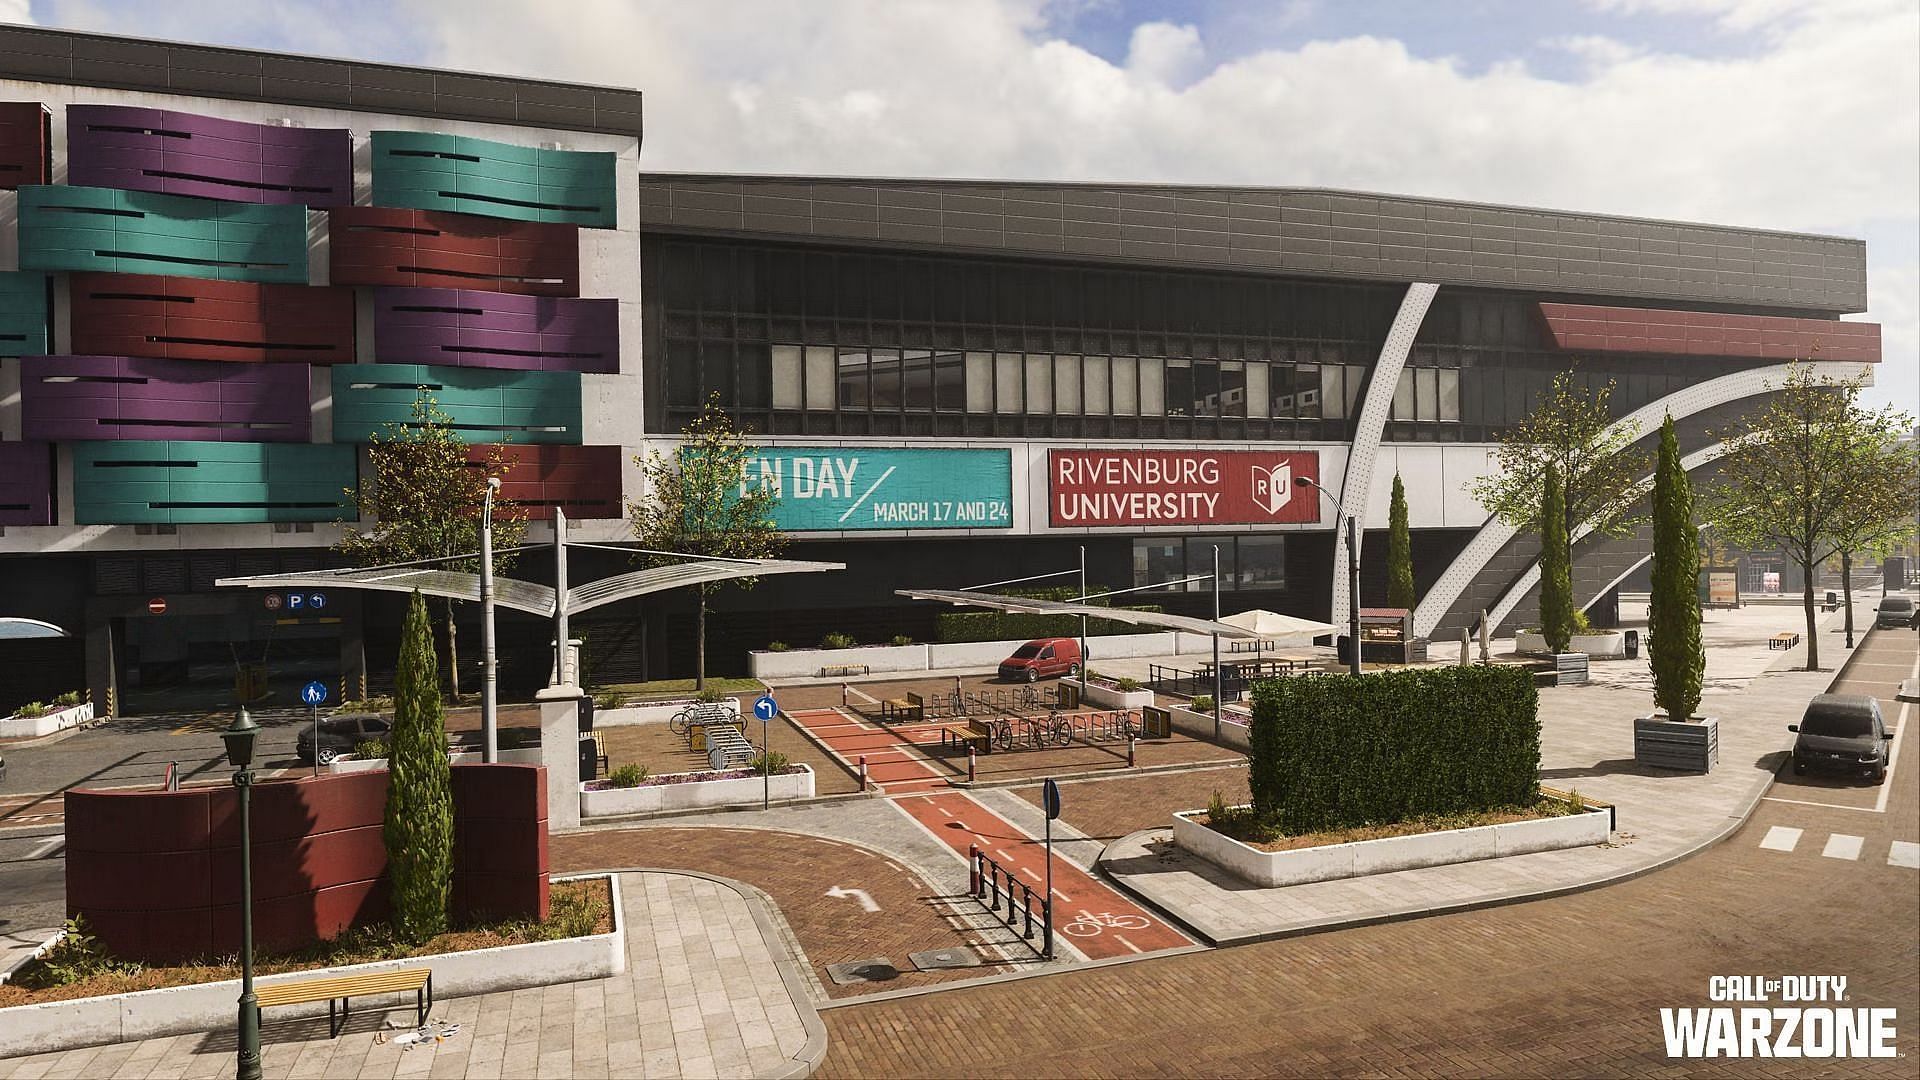 University in Vondel (Image via Activision)